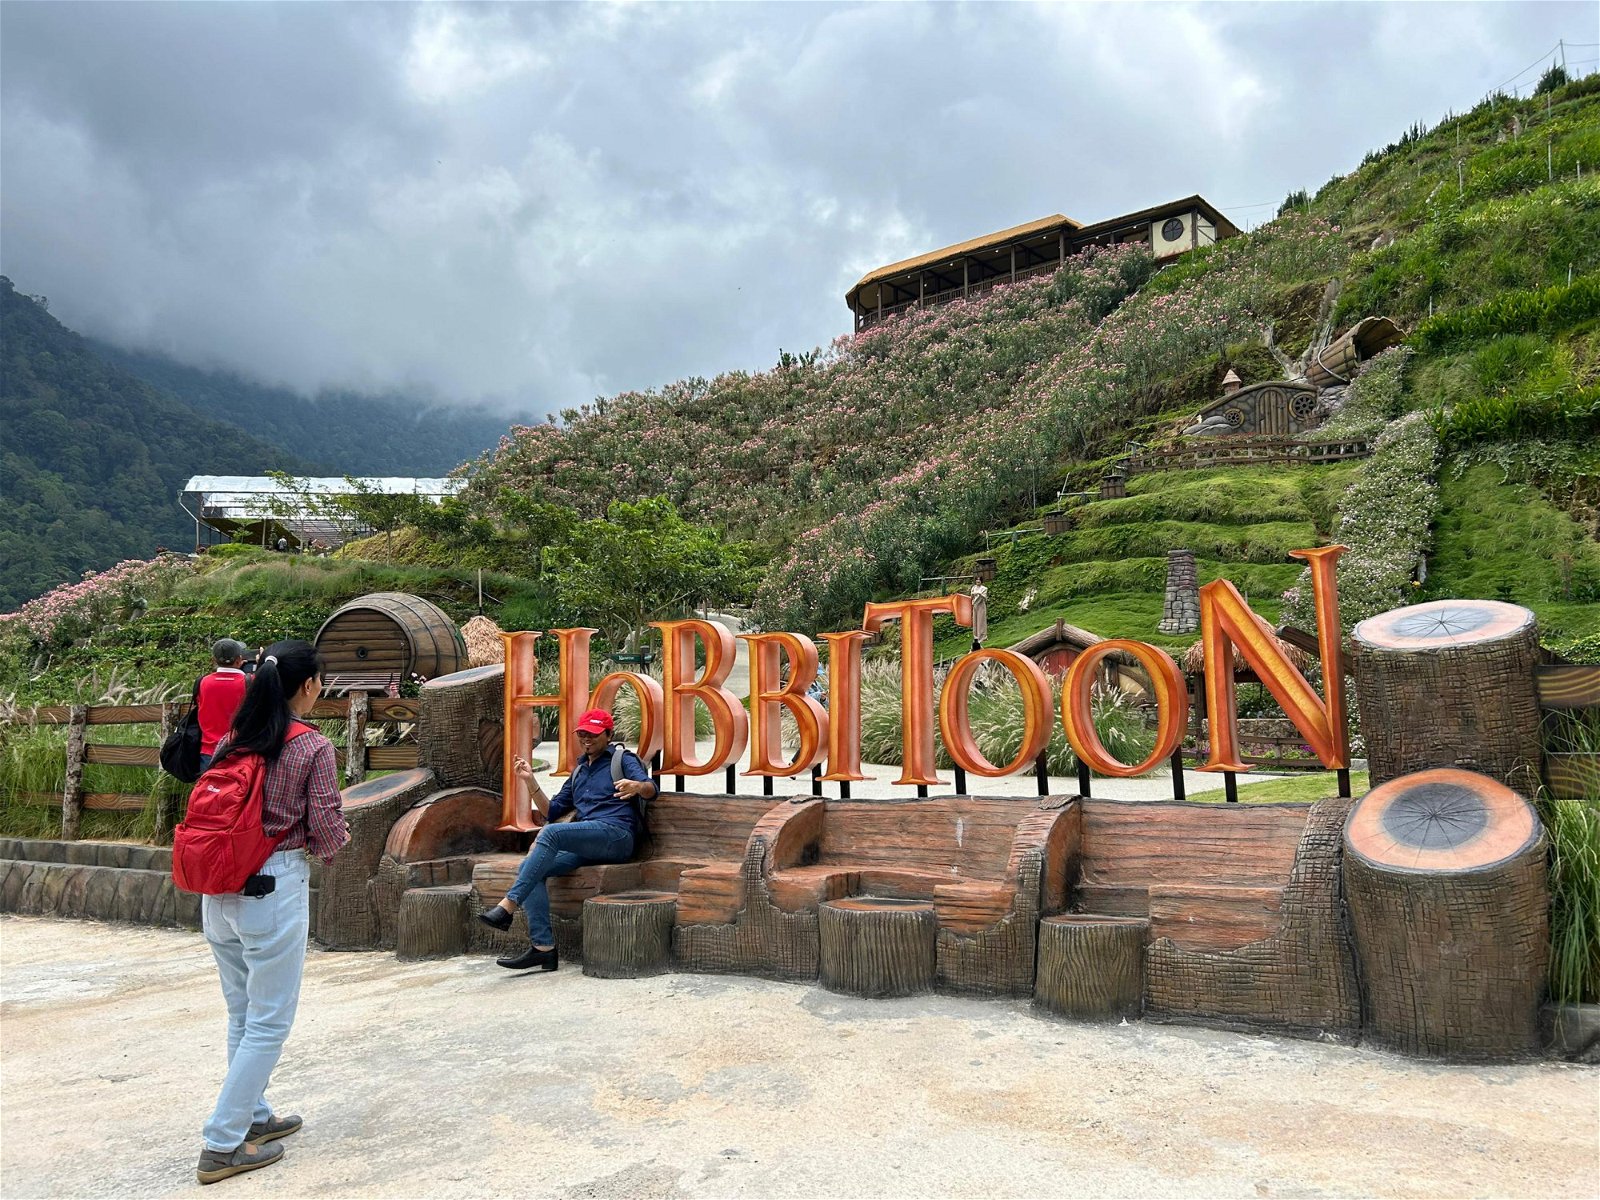 位于新邦波赖通往金马仑高原路旁的哈比村，为霹雳州发展生态旅游的新景点。